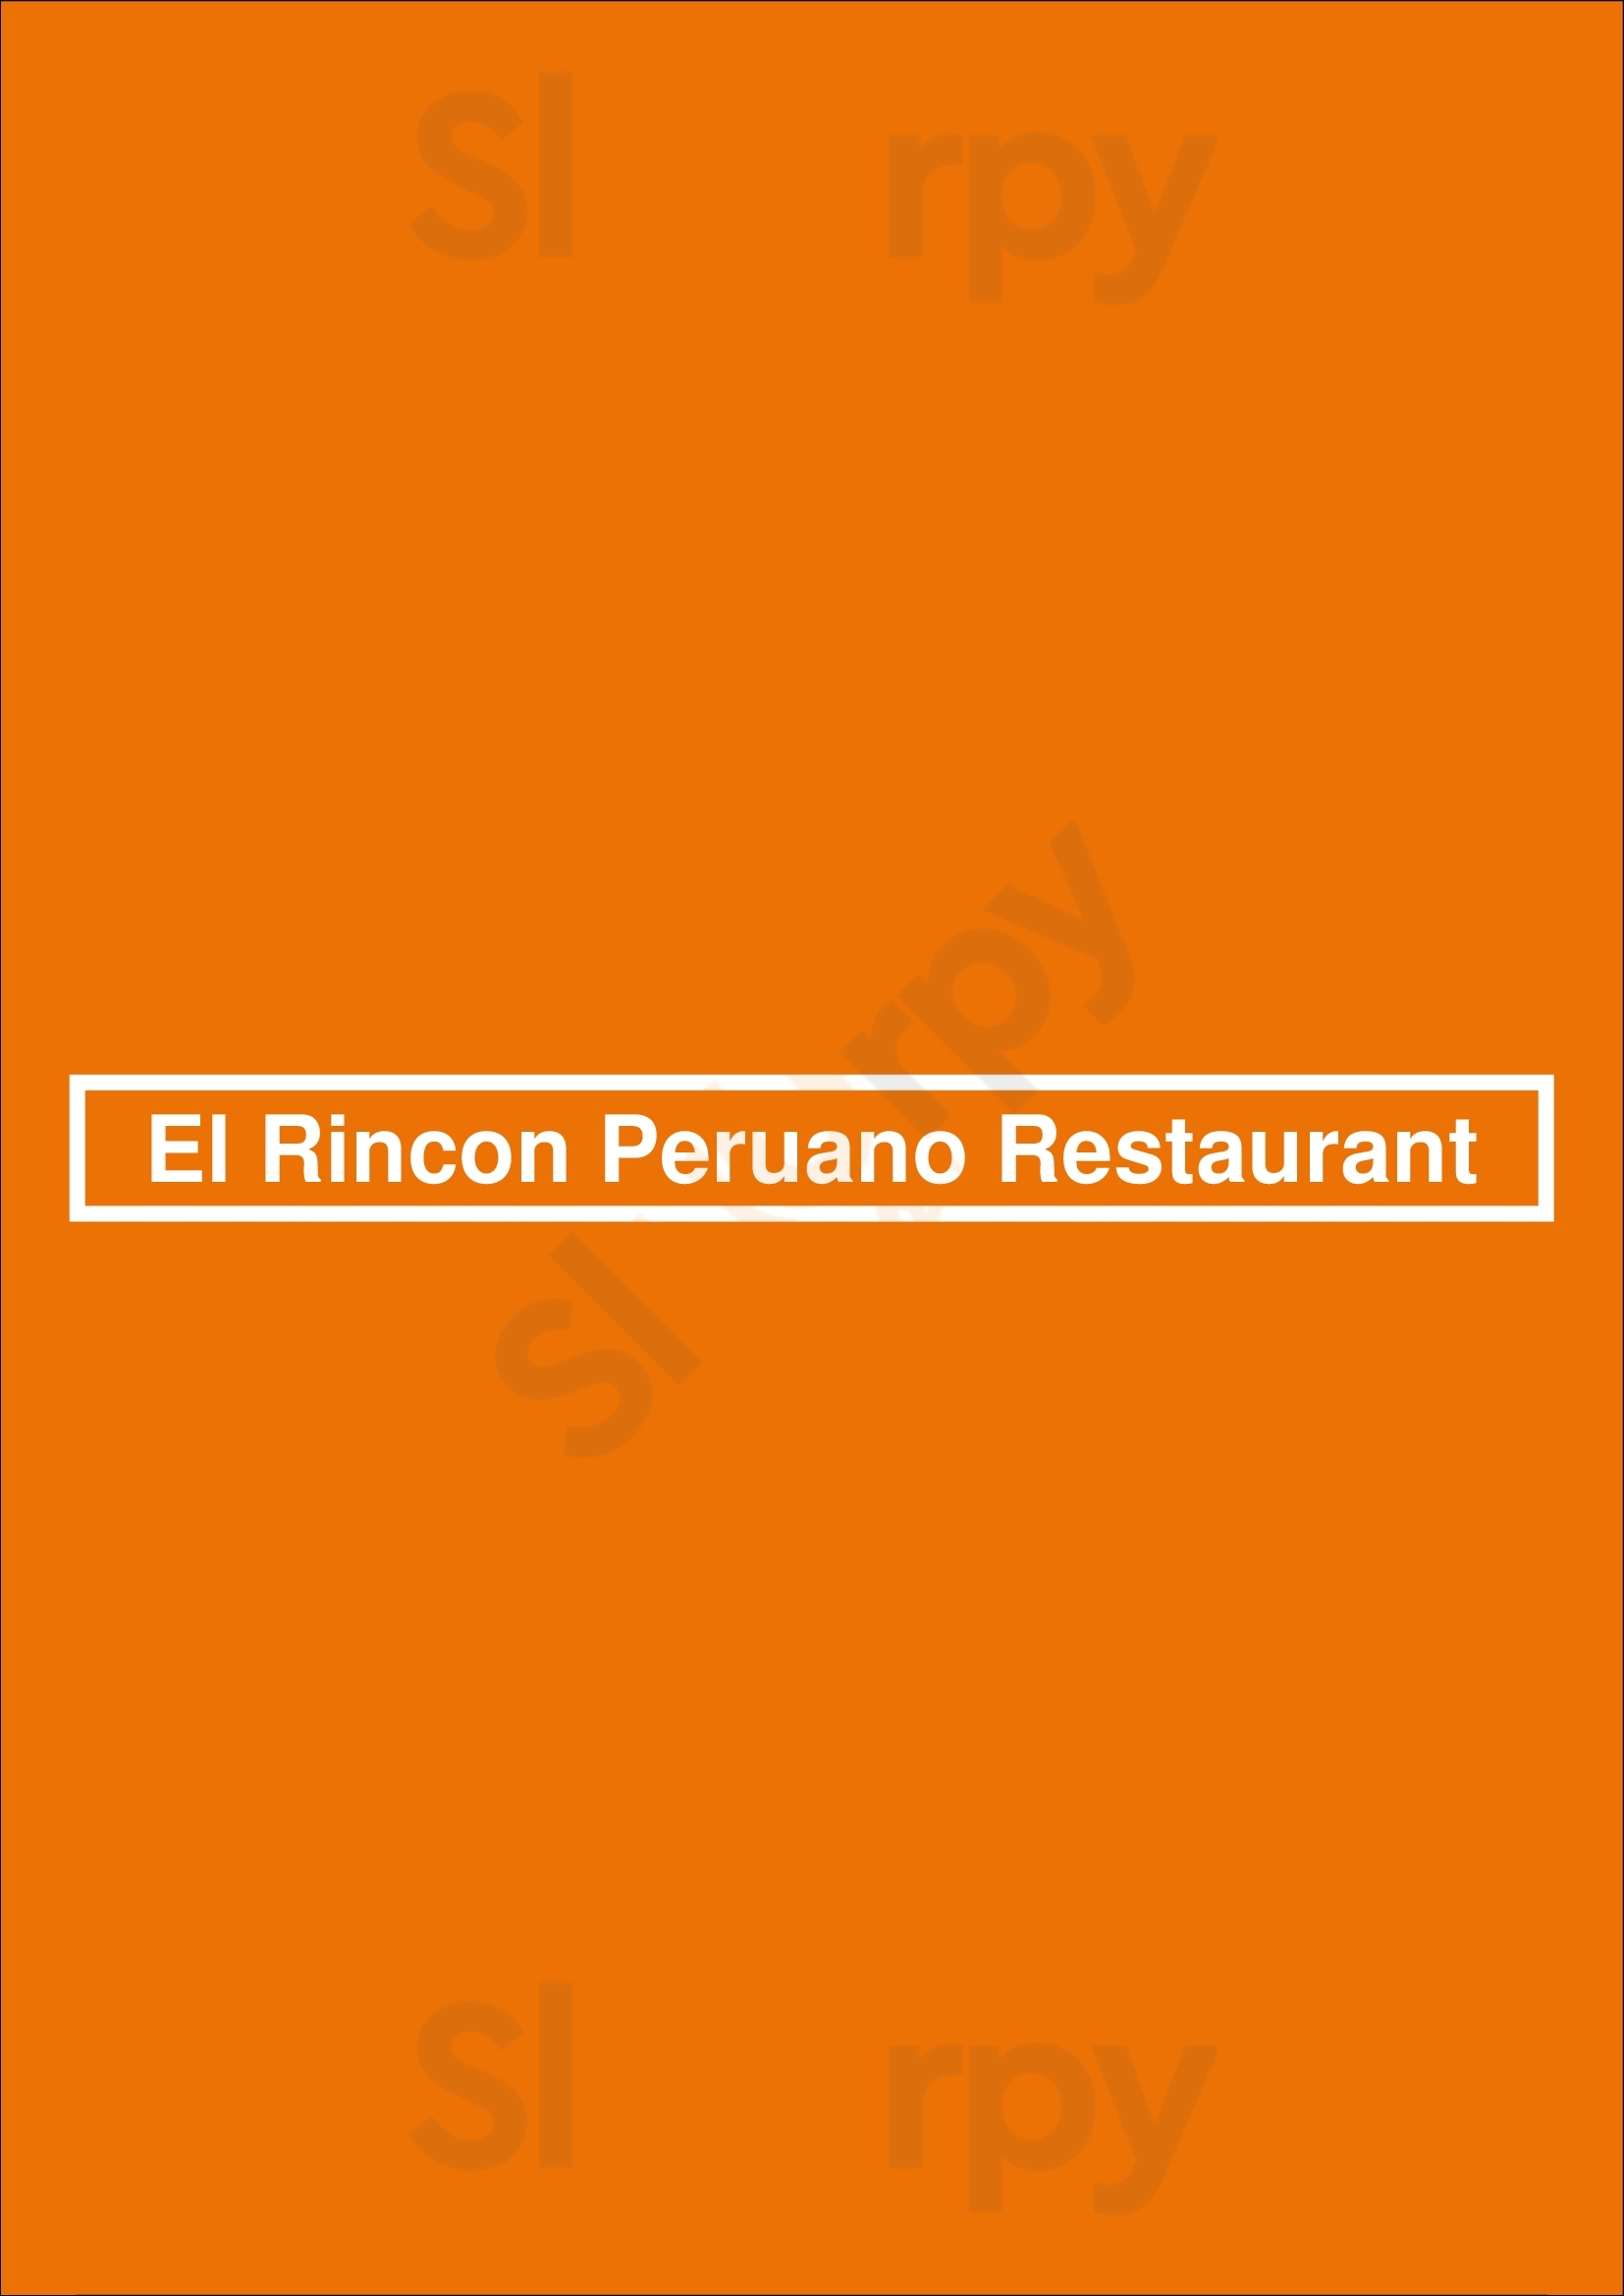 El Rincon Peruano Restaurant Tampa Menu - 1